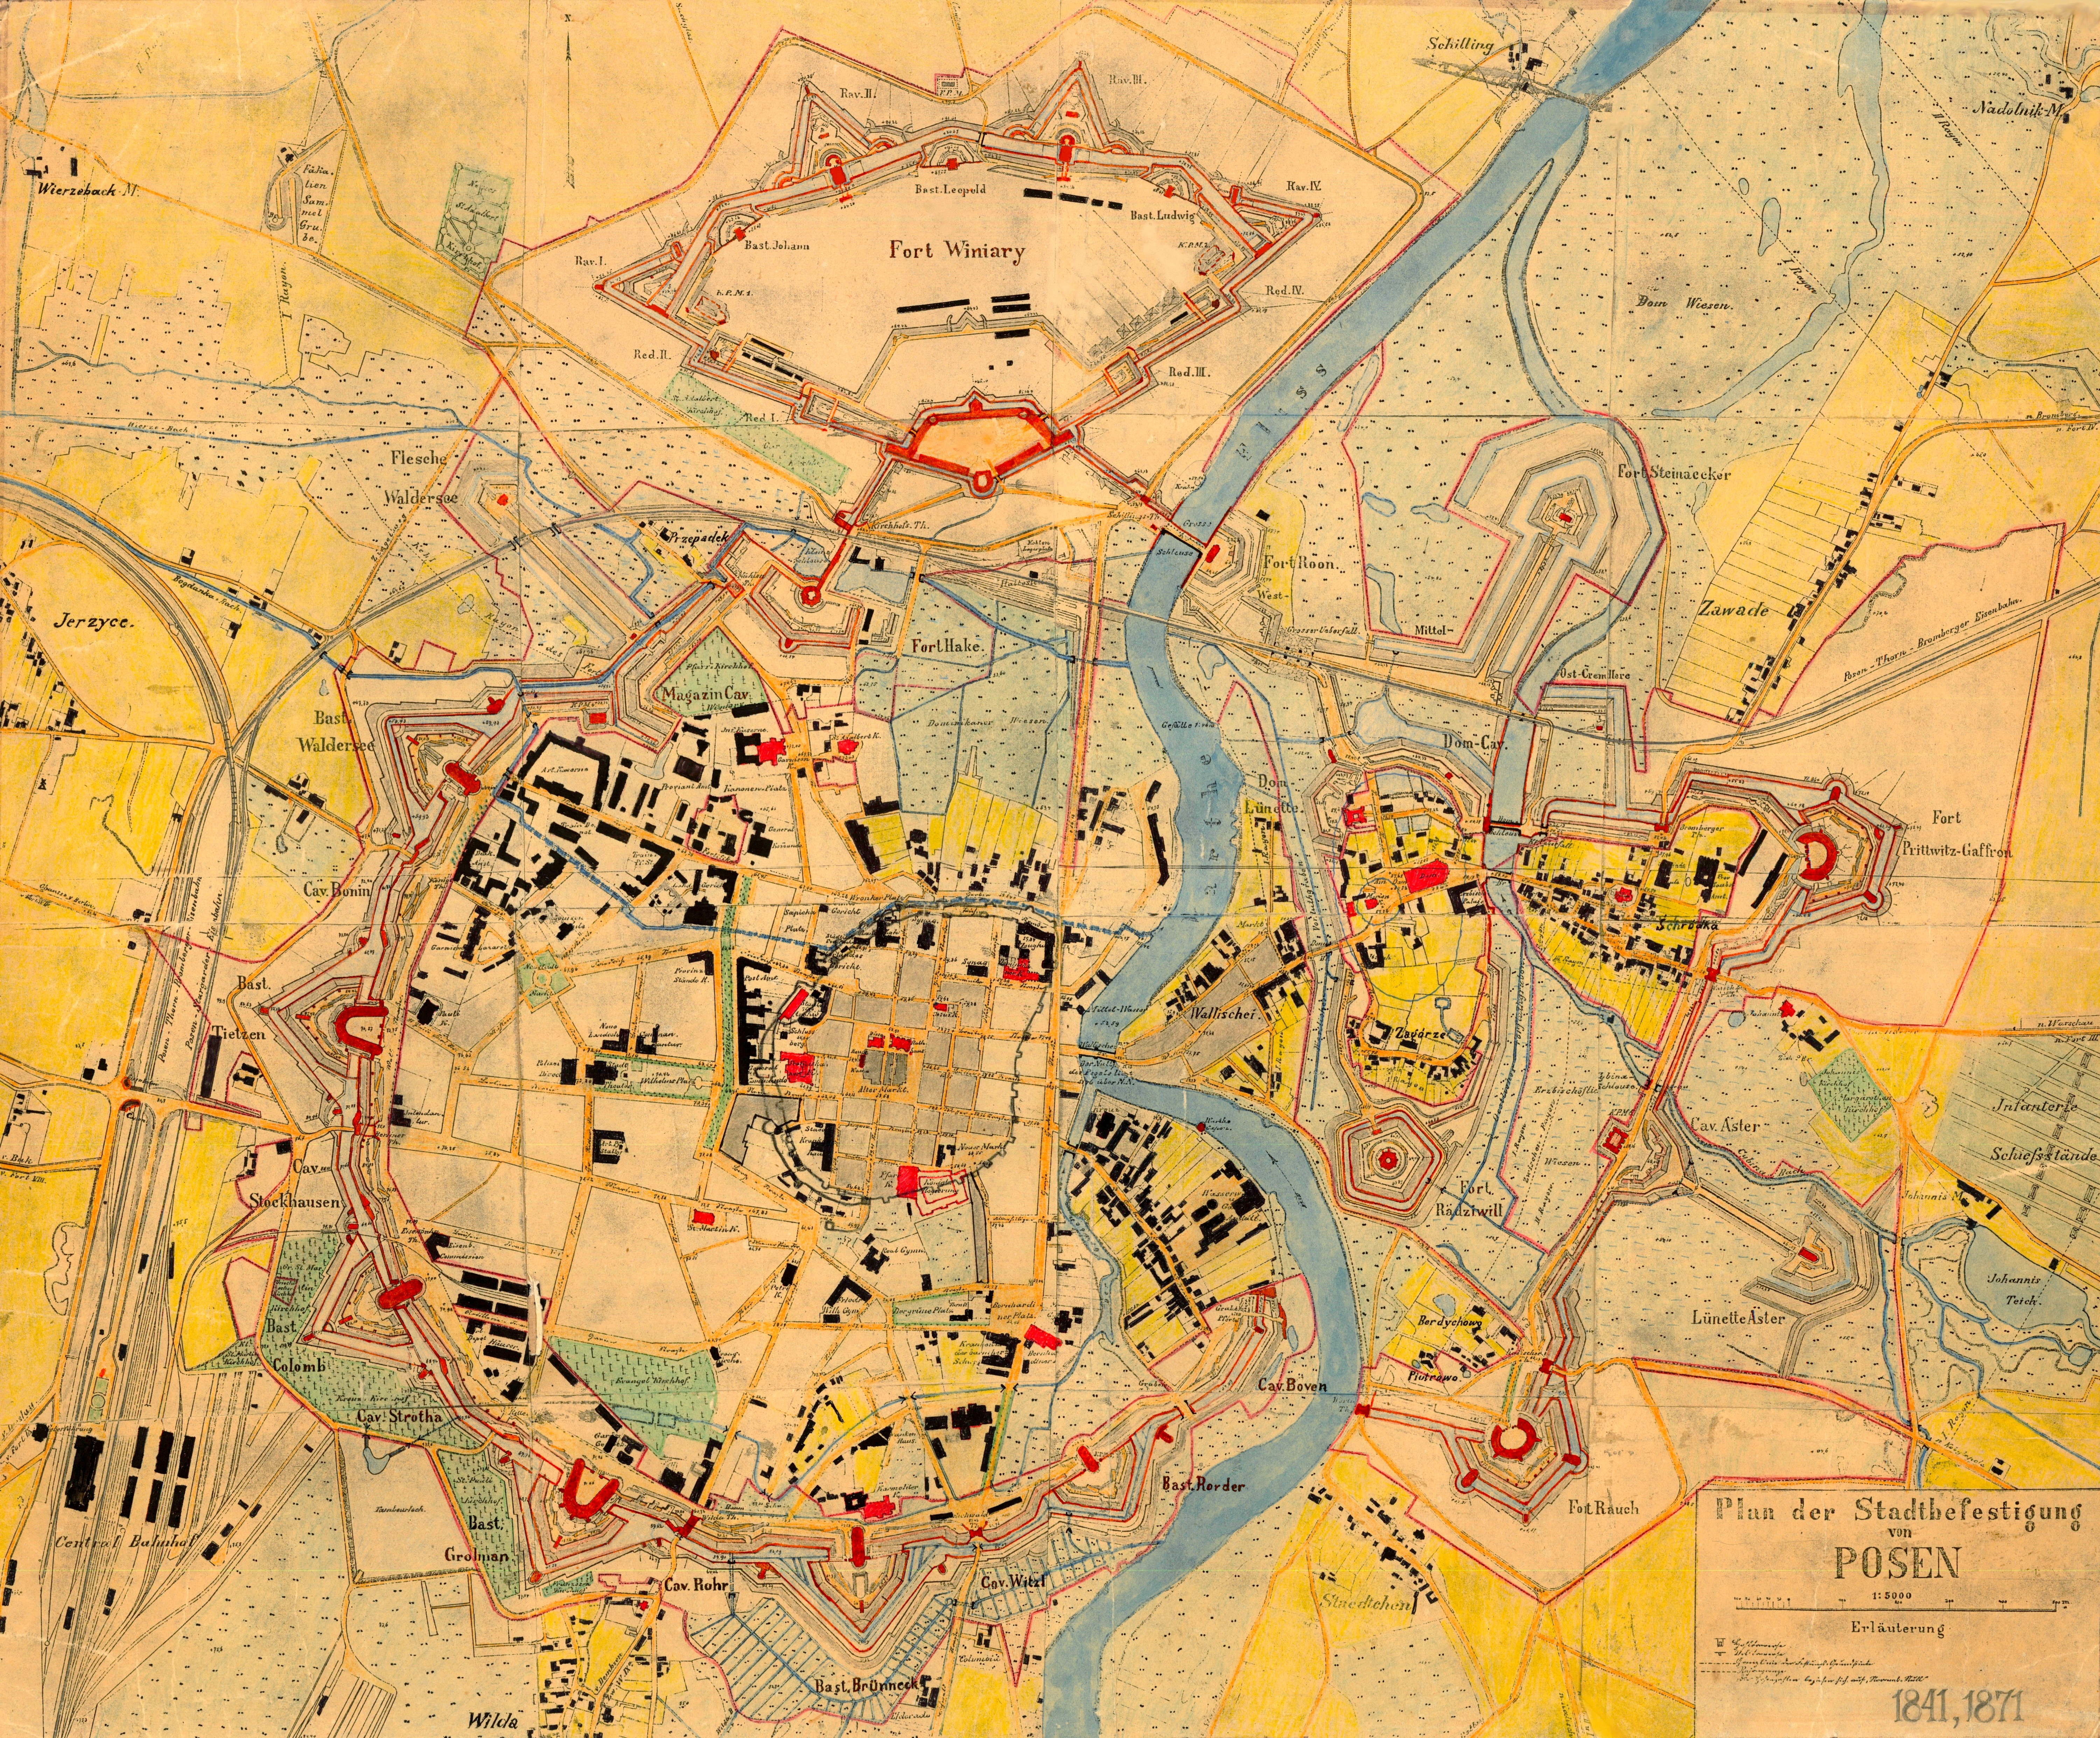 Plan der Stadtbefestigung von Posen 1841 1871 